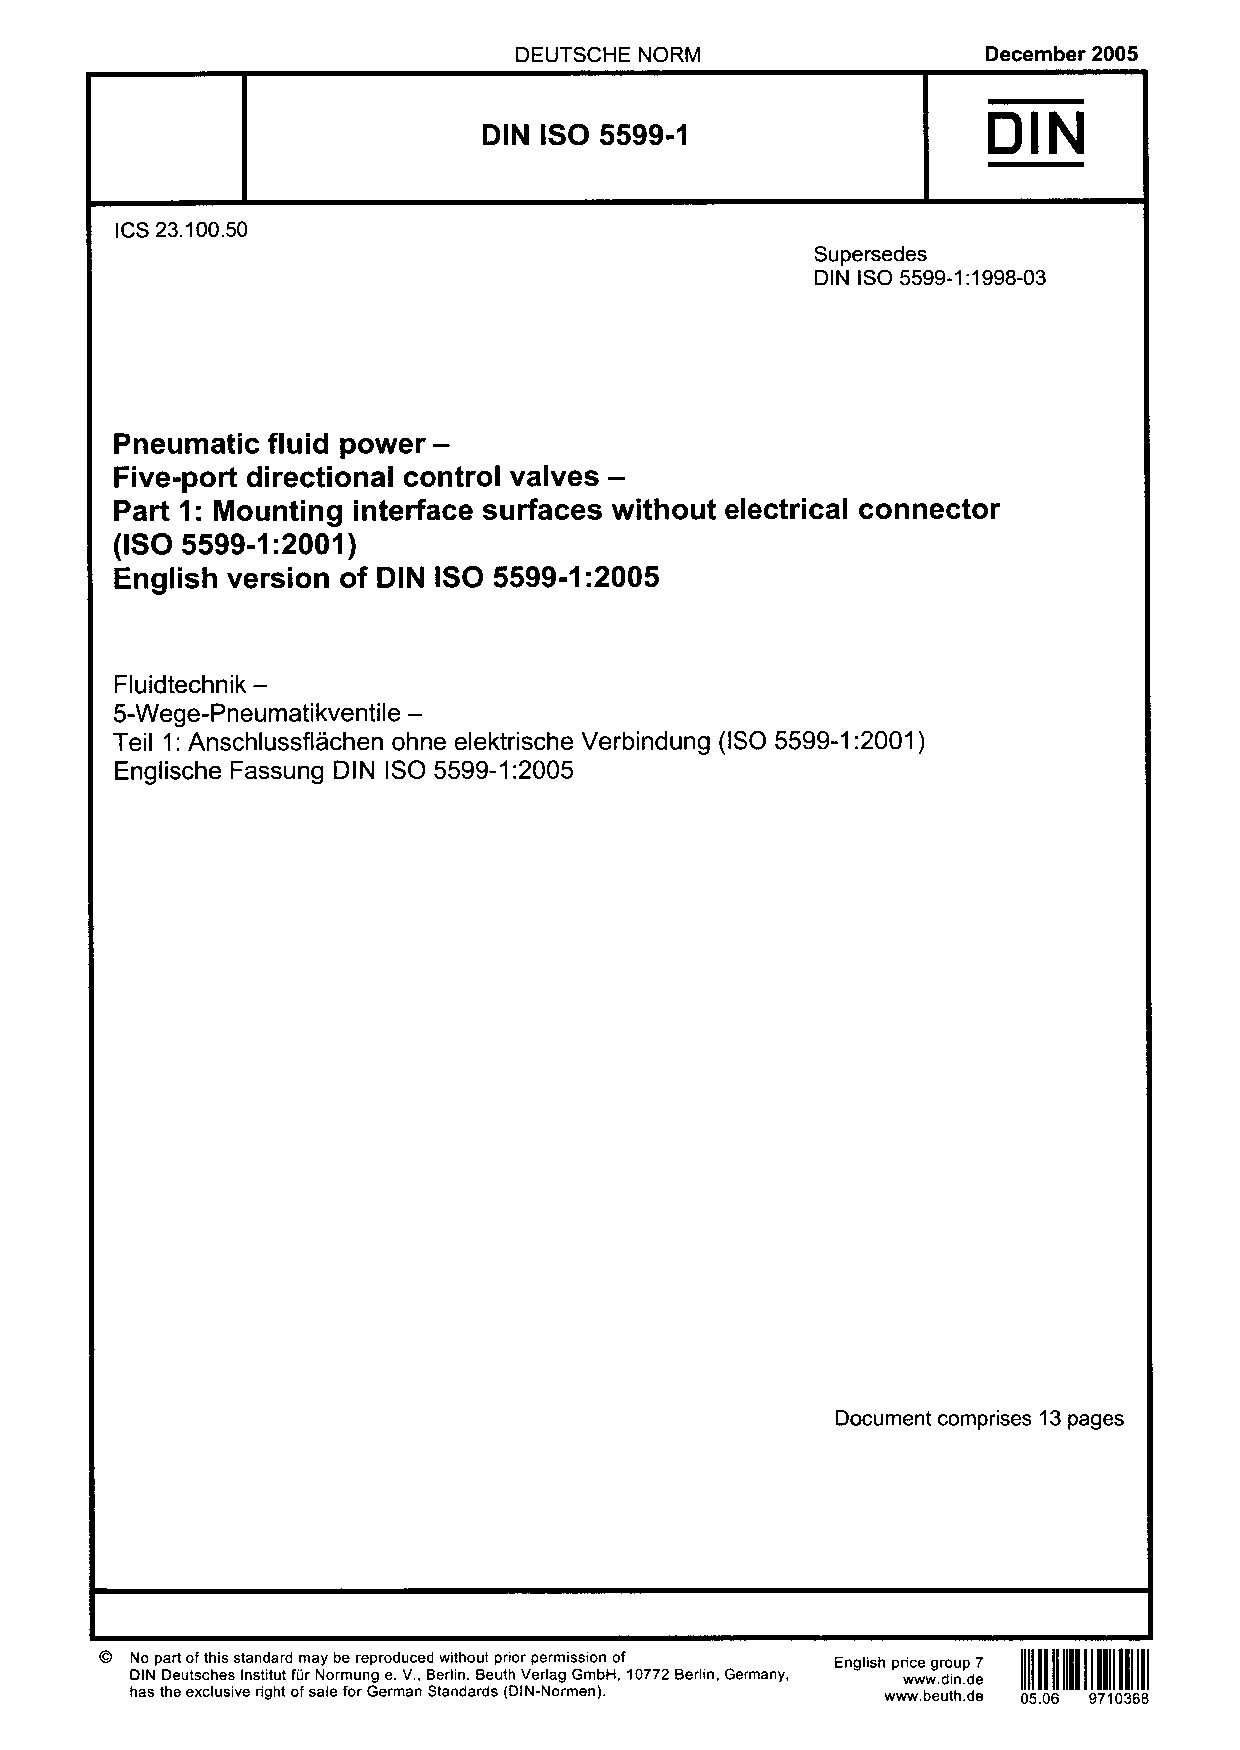 DIN ISO 5599-1:2005封面图